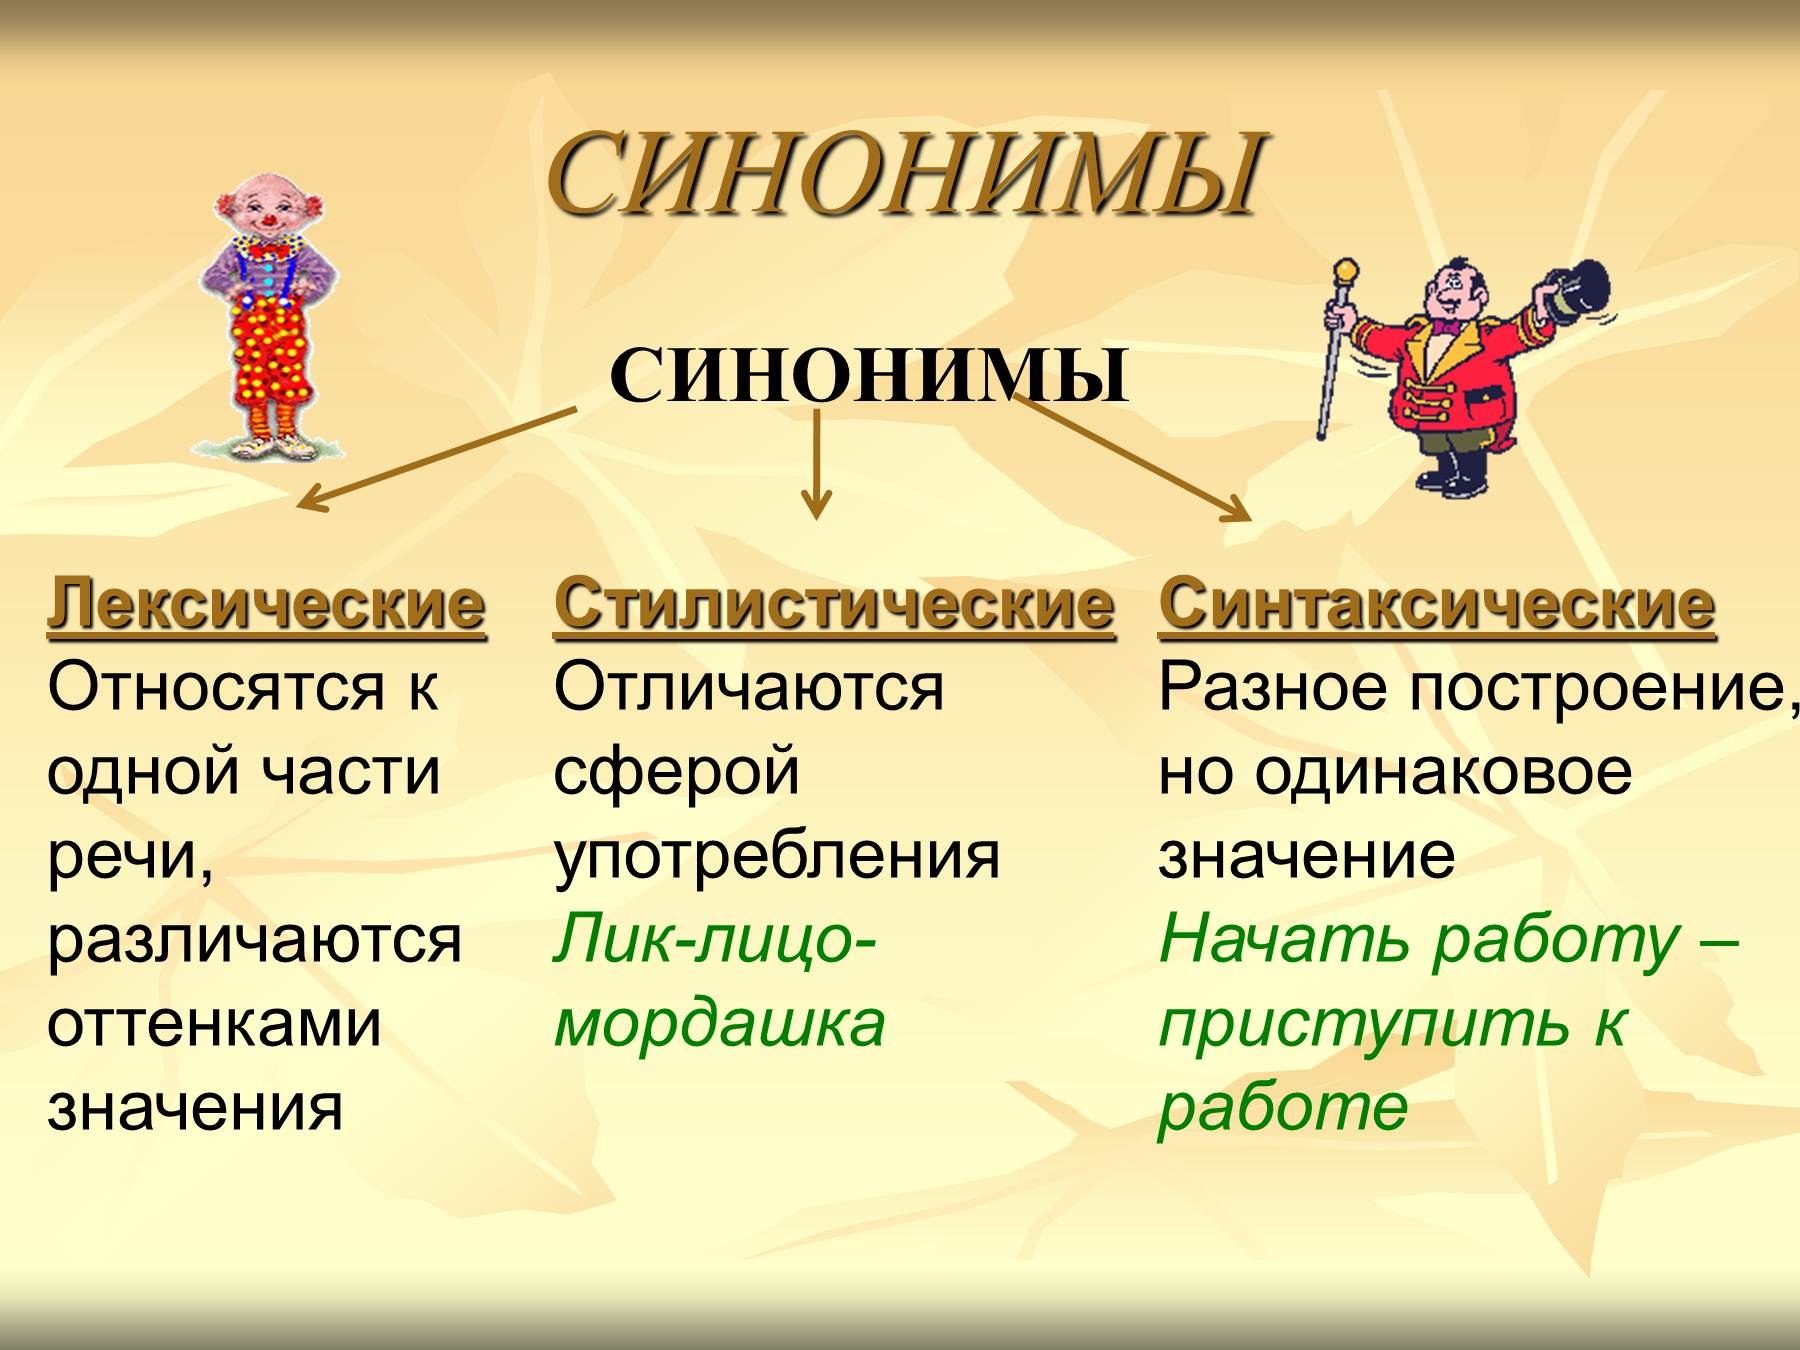 Какие слова относятся к. Синонимы. Синонинами. Презентация на тему синонимы. Что такое синонимы в русском языке.